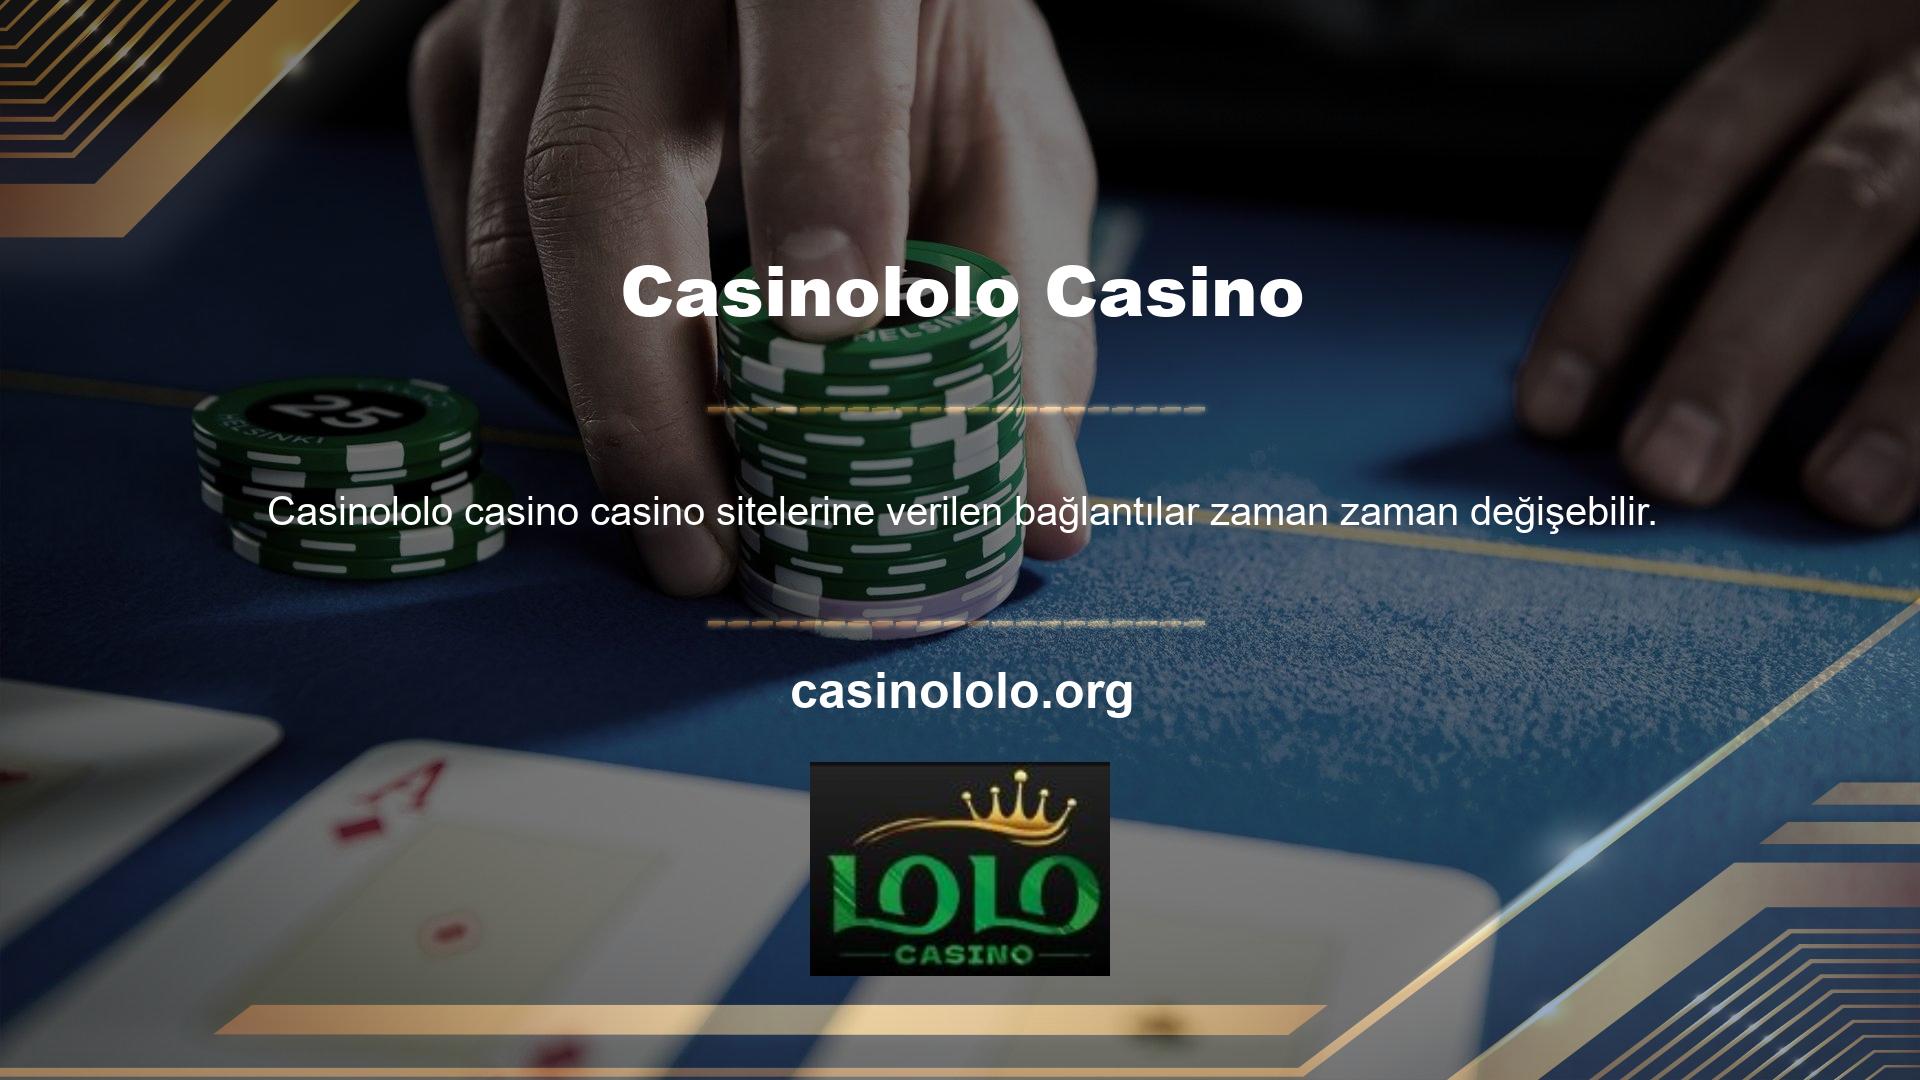 Casinololo güvenilir olup olmadığını soran kişiler de Casinololo adresini kullandı